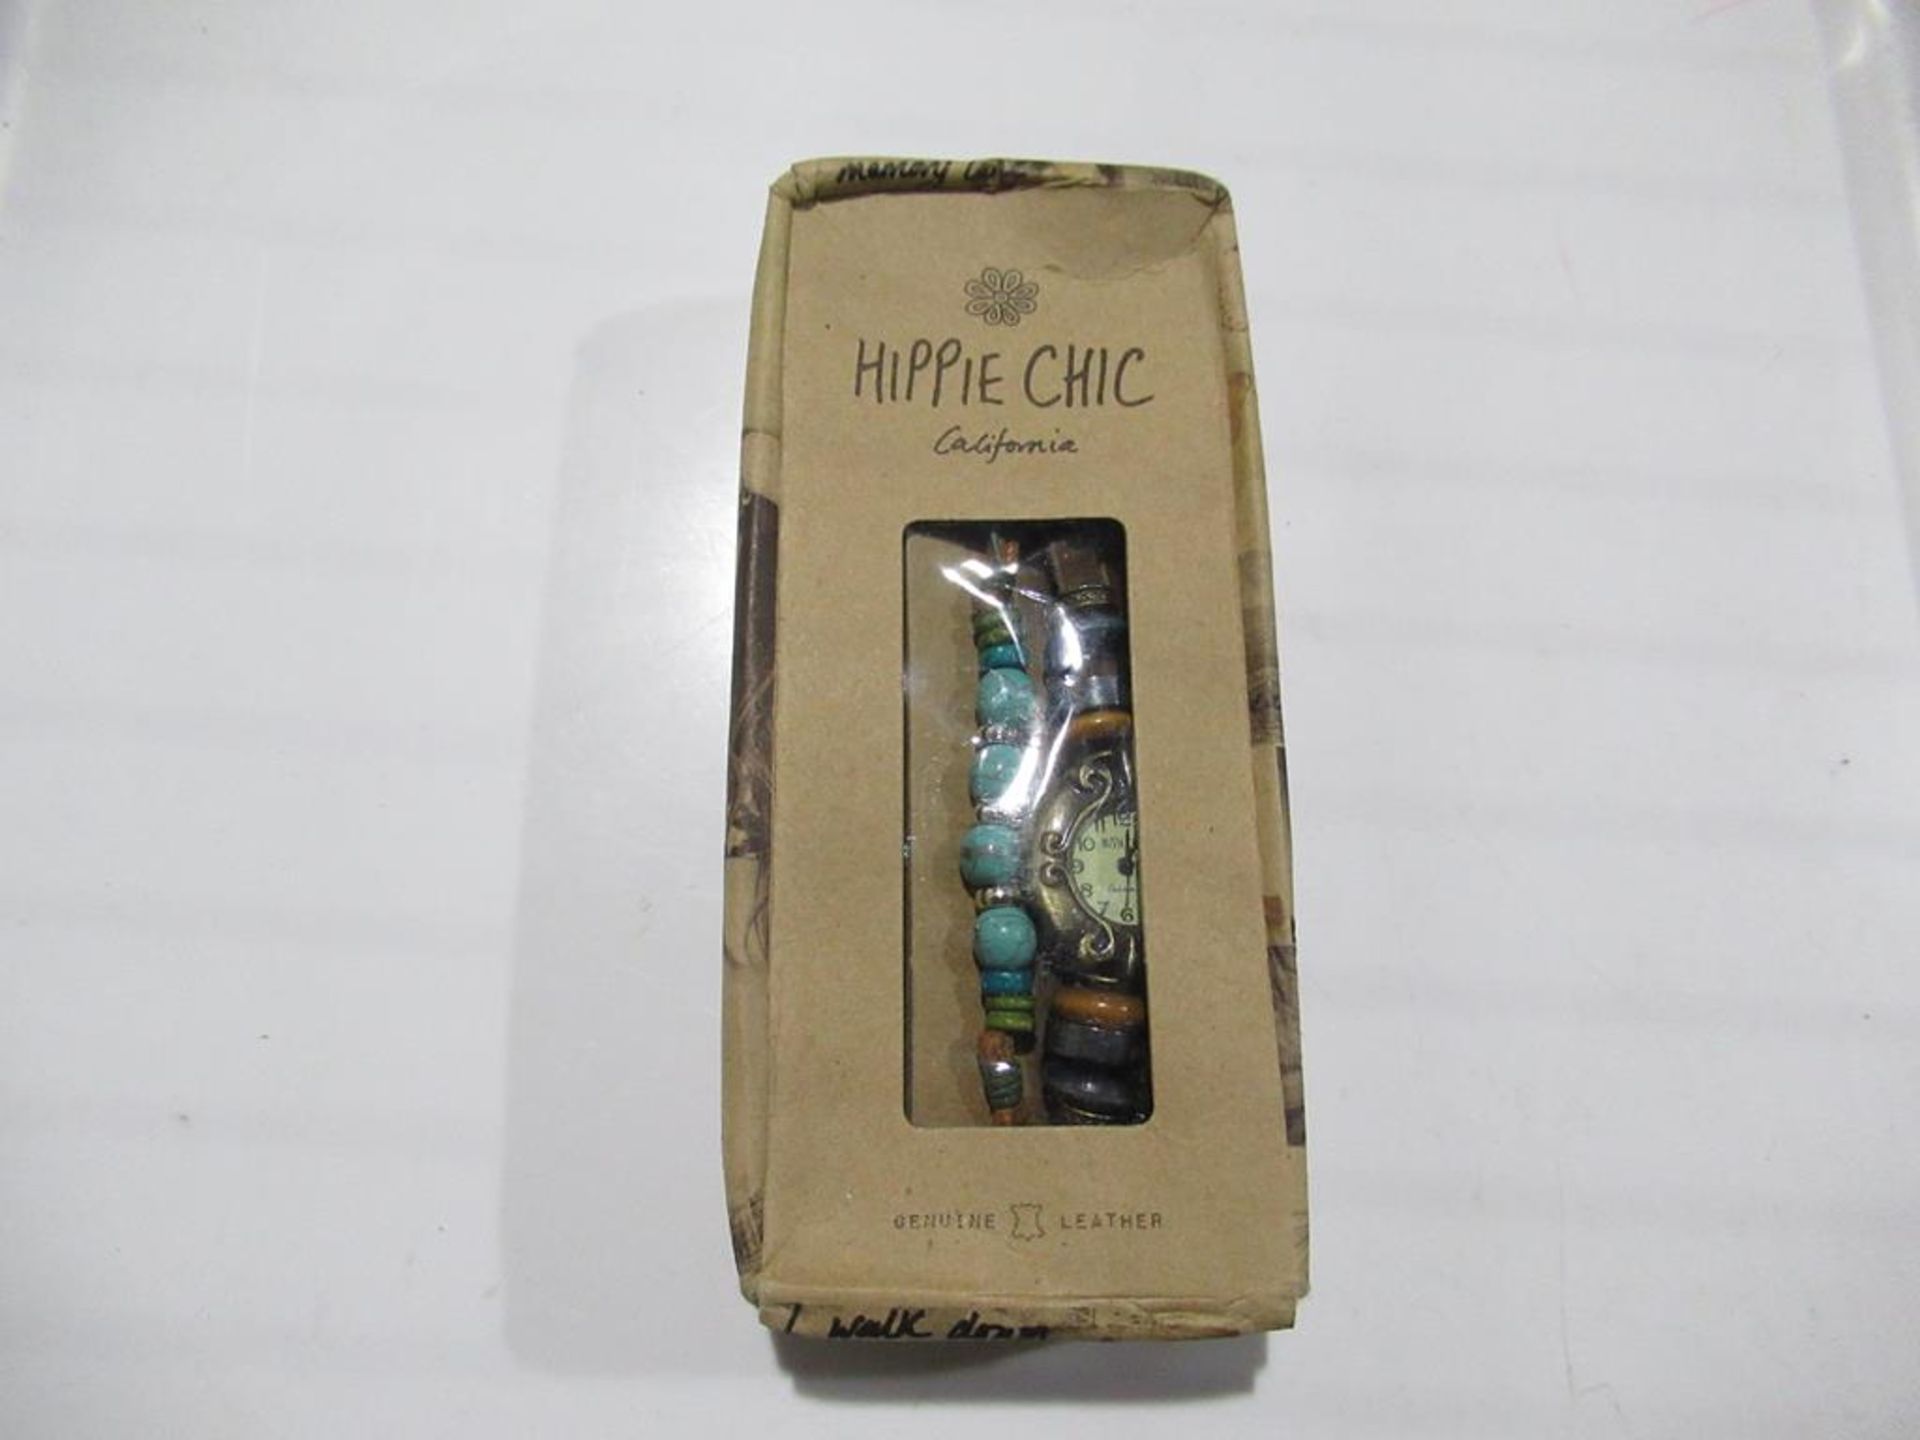 A box of Hippie Chic 'Bazaar' watches